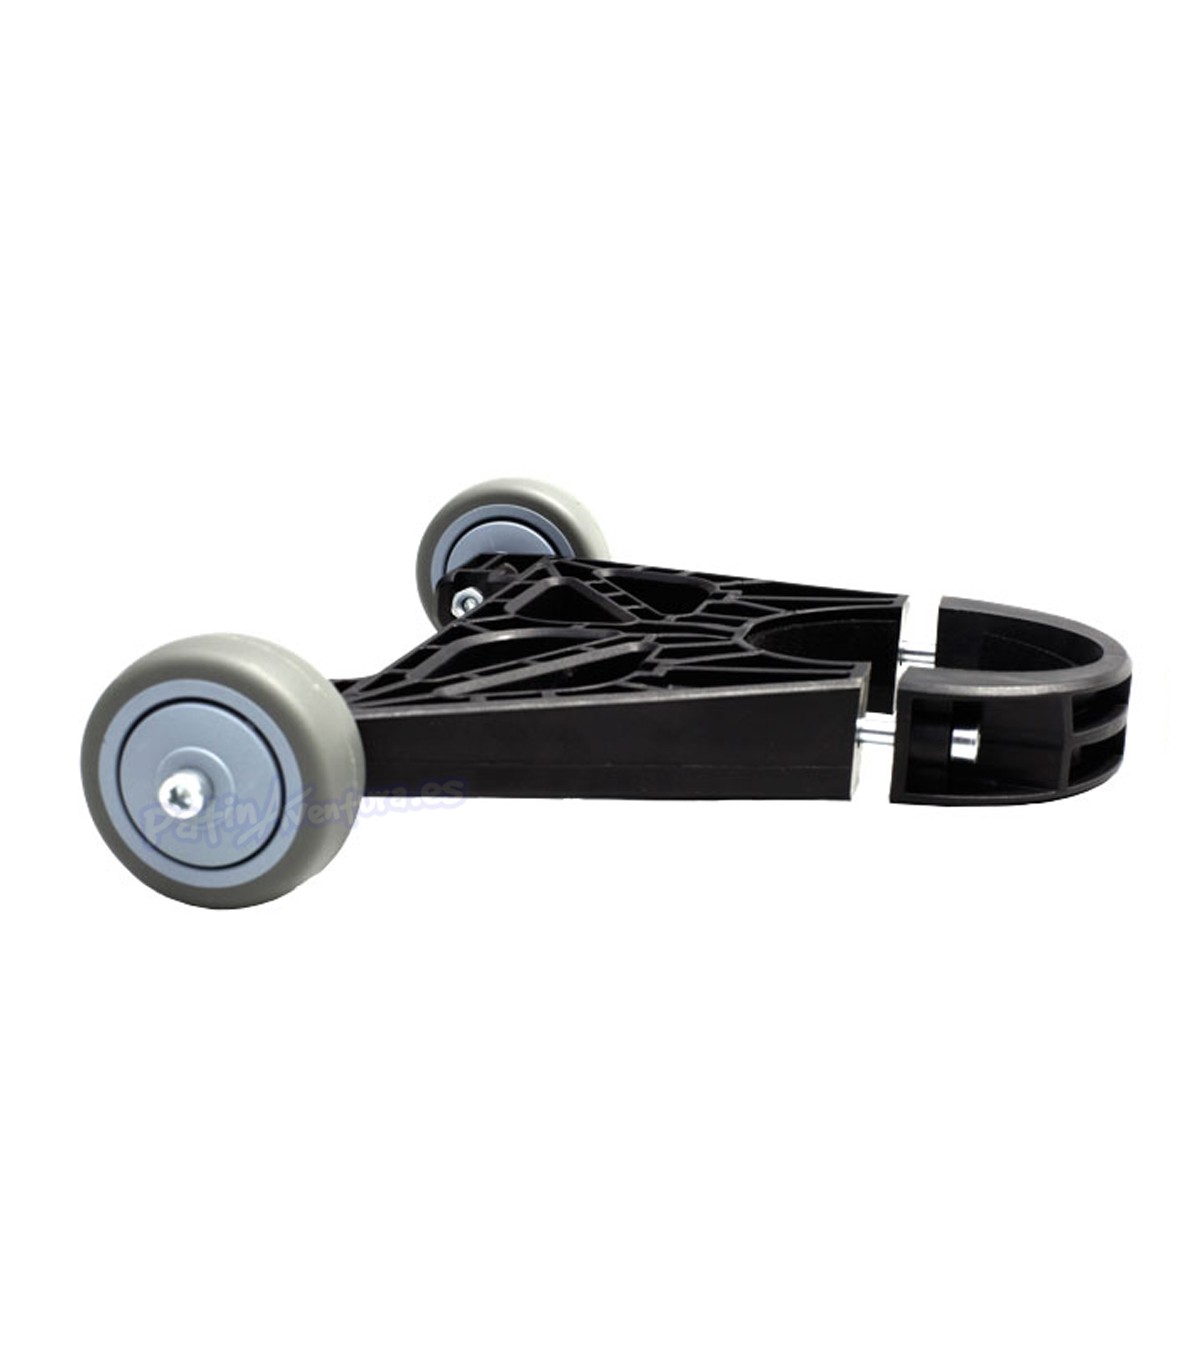 Bolsas para transportar el patinete eléctrico de 2 ruedas